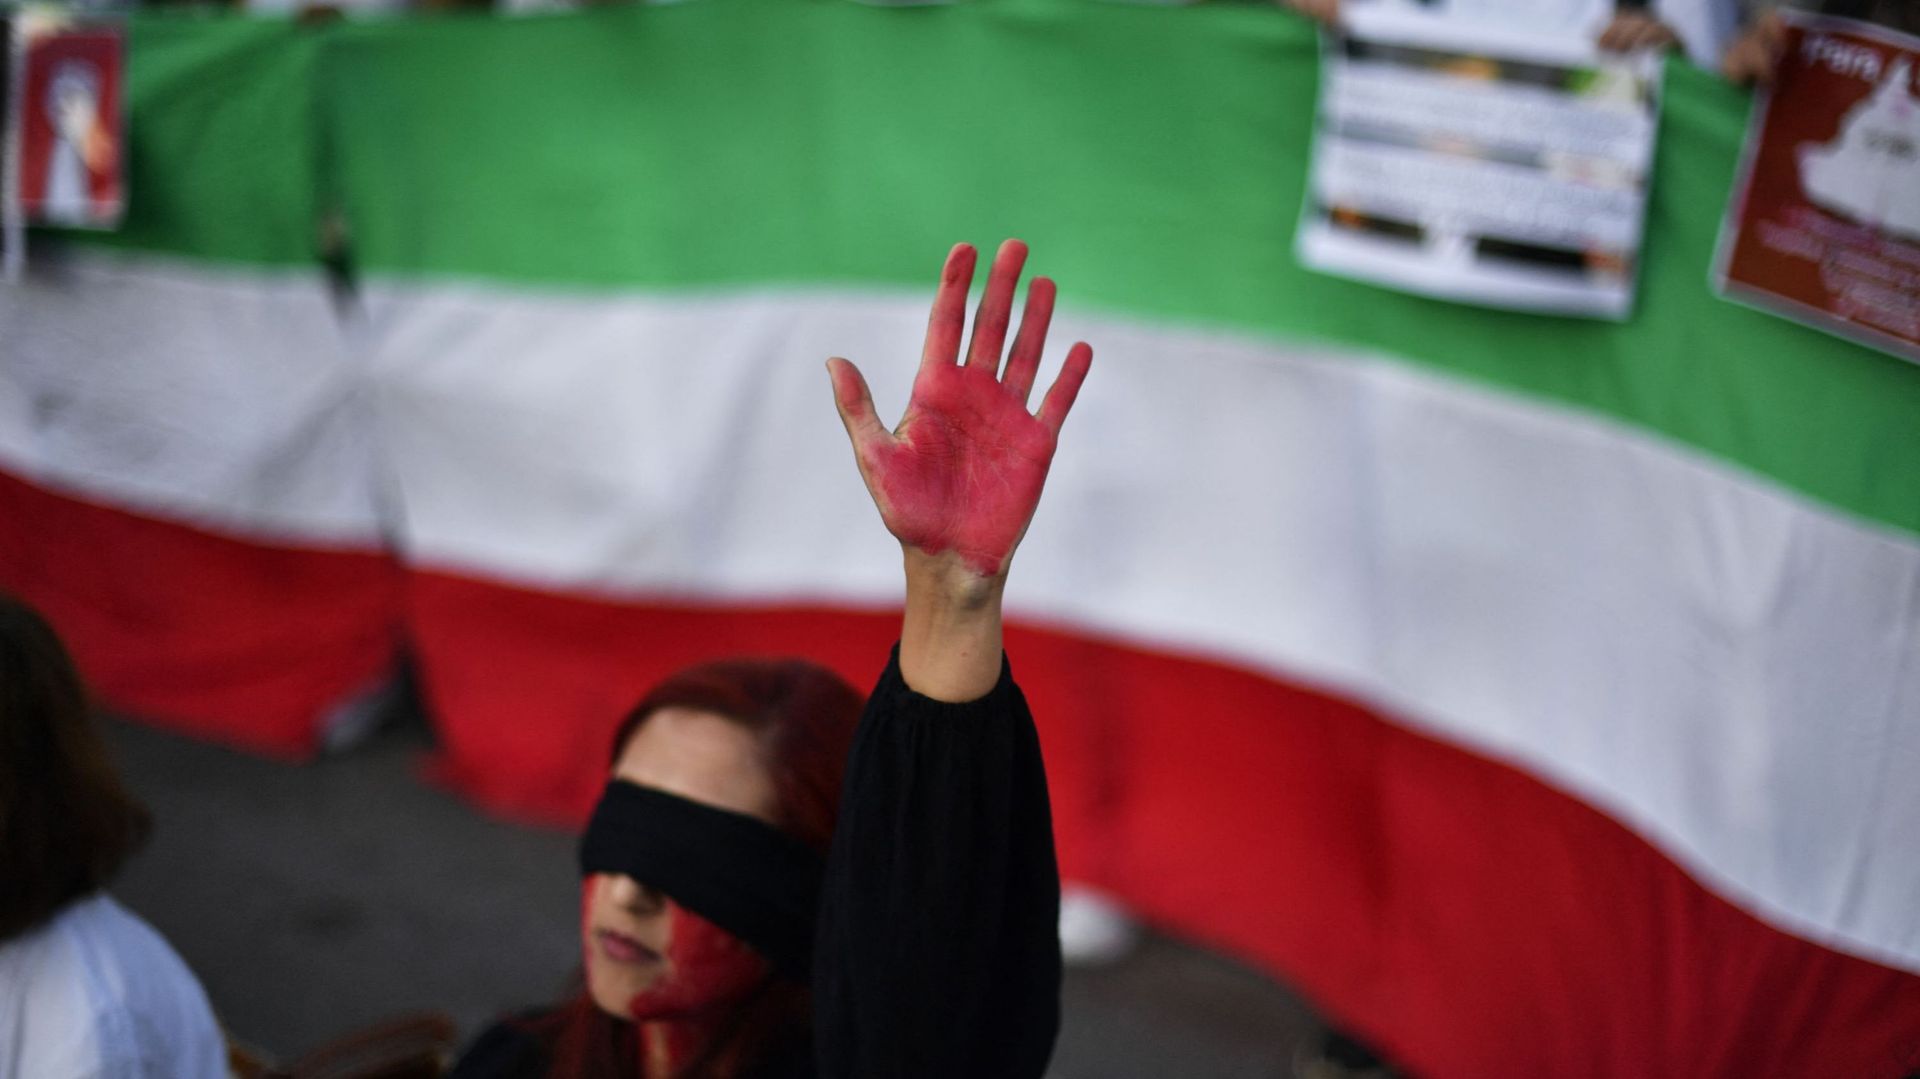 Une femme lève sa main avec de la peinture rouge lors d’une manifestation de soutien aux femmes iraniennes, le 4 octobre 2022 à Barcelone, suite à la mort de l’Iranienne kurde Mahsa Amini en Iran (image d’illustration)